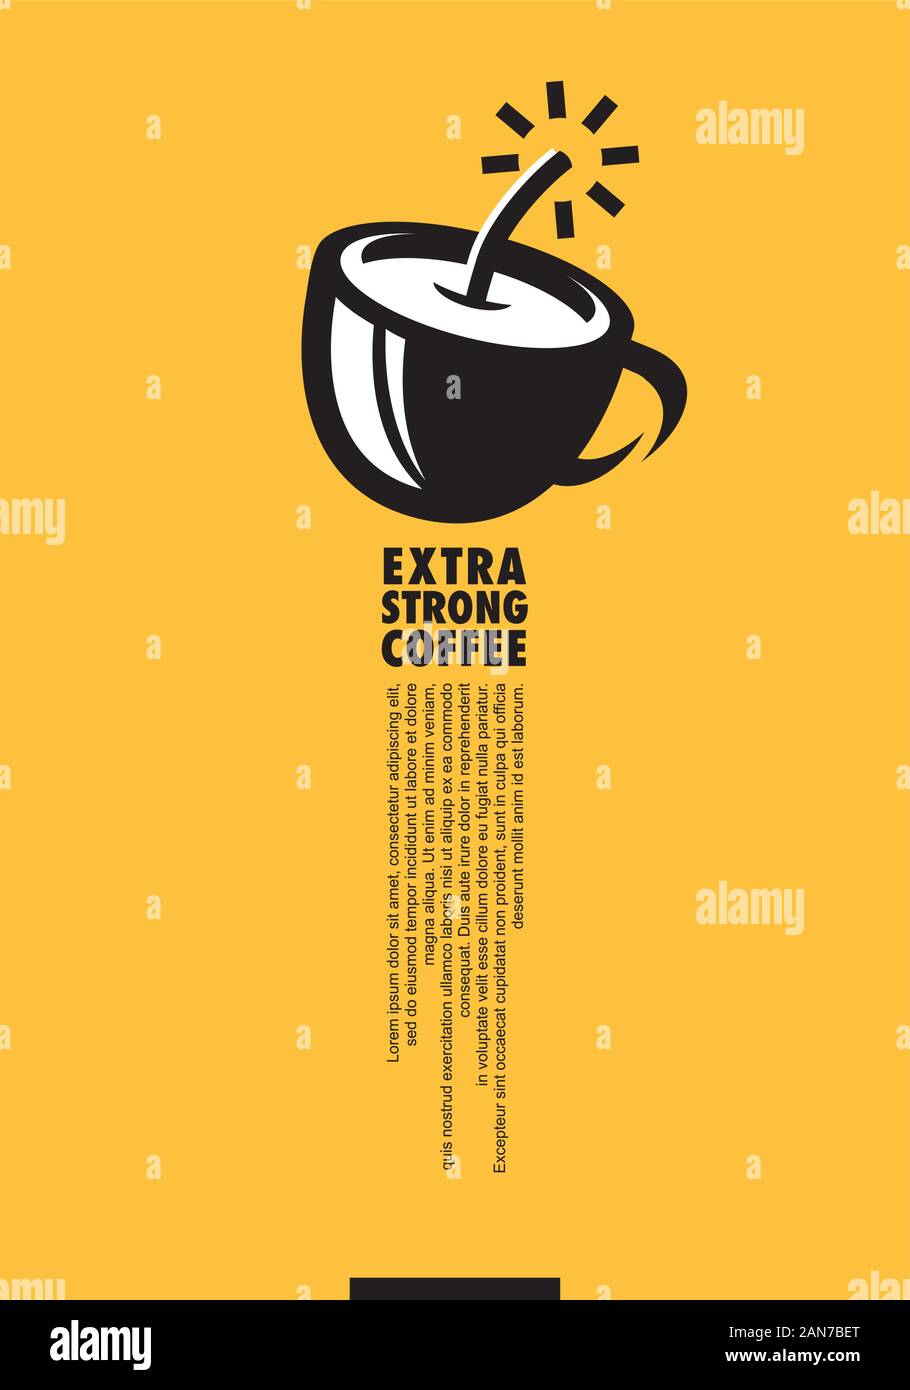 Extra forte caffè creative minimal design poster con la tazza di caffè e la dinamite simbolo. Annuncio artistico concetto per bevande calde amanti. Illustrazione Vettoriale Illustrazione Vettoriale